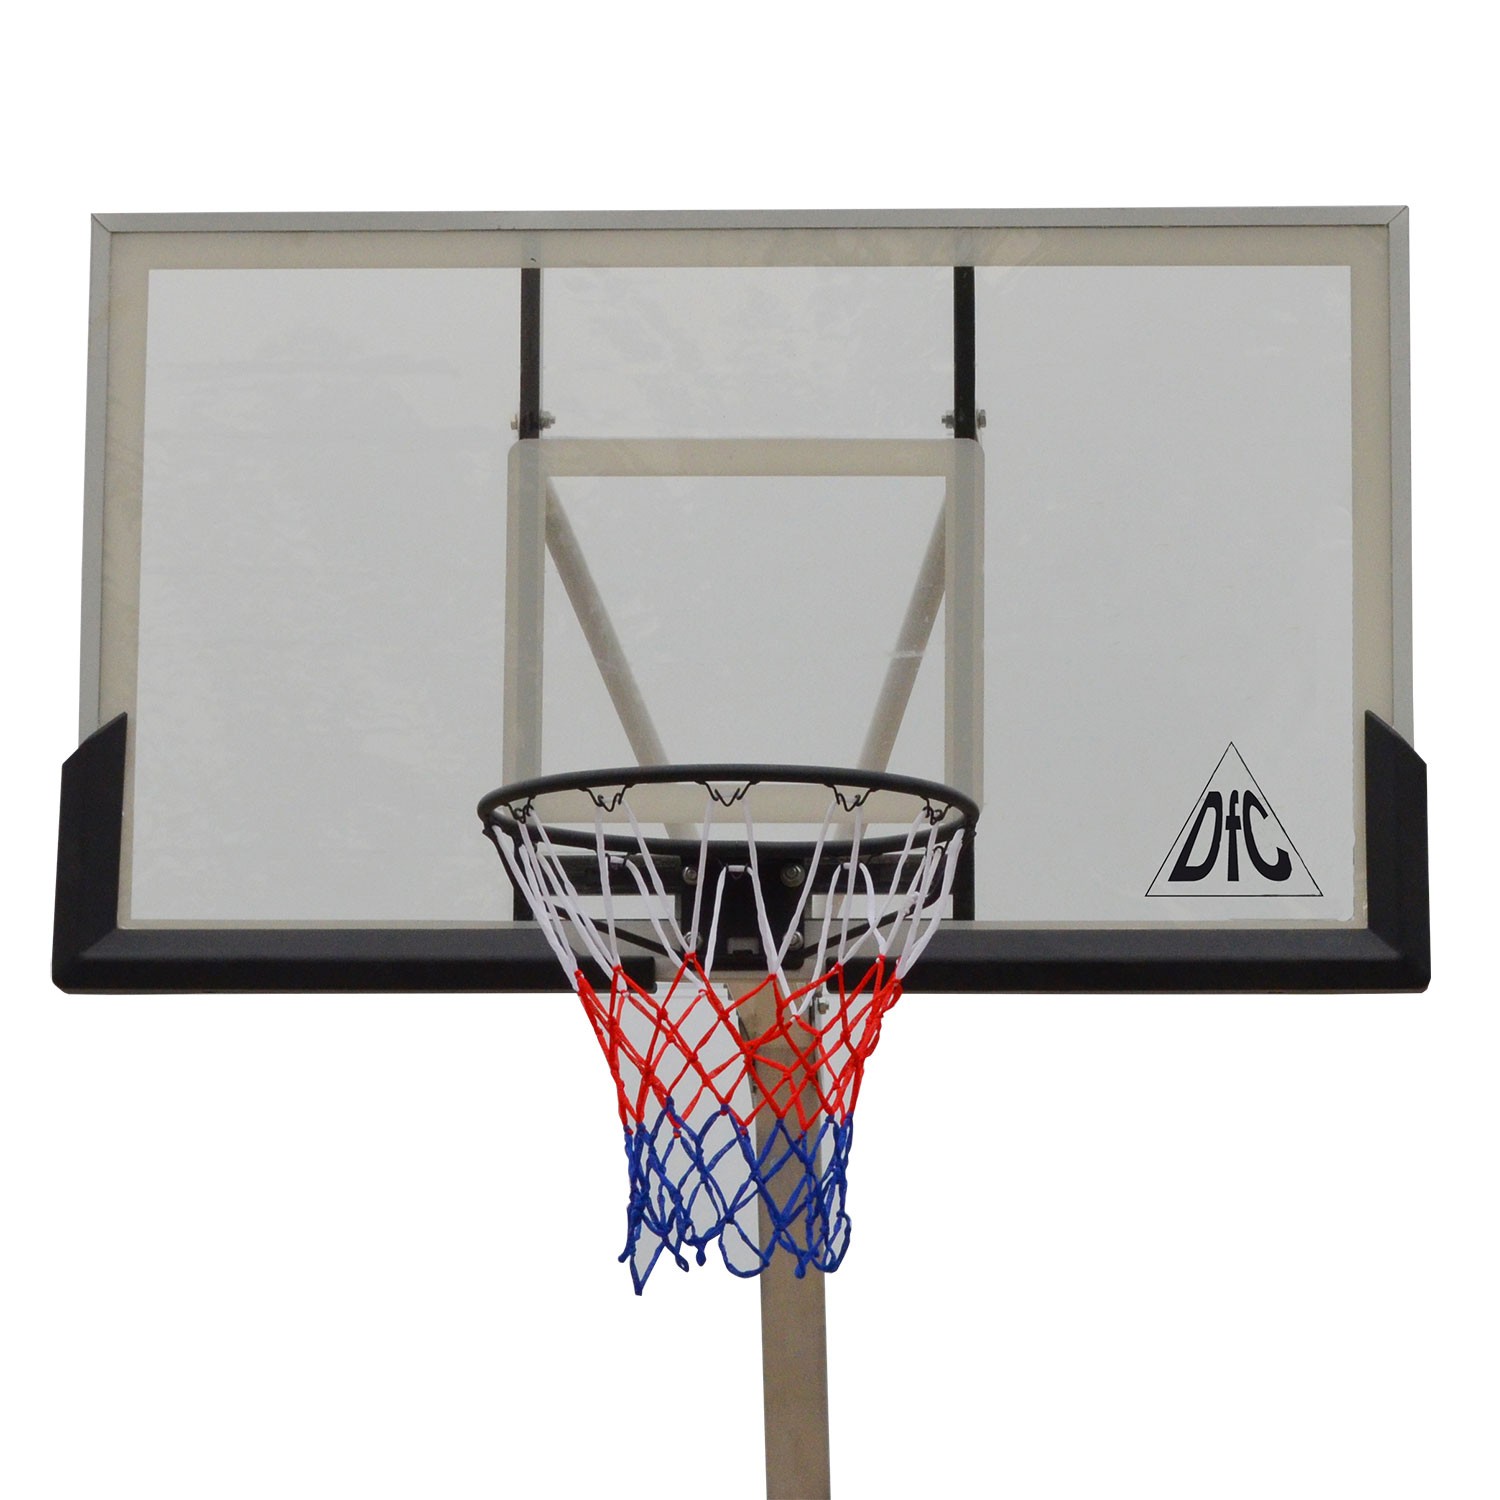 Баскетбольная мобильная стойка DFC STAND50SG 127X80см поликарбонат, изображение 5